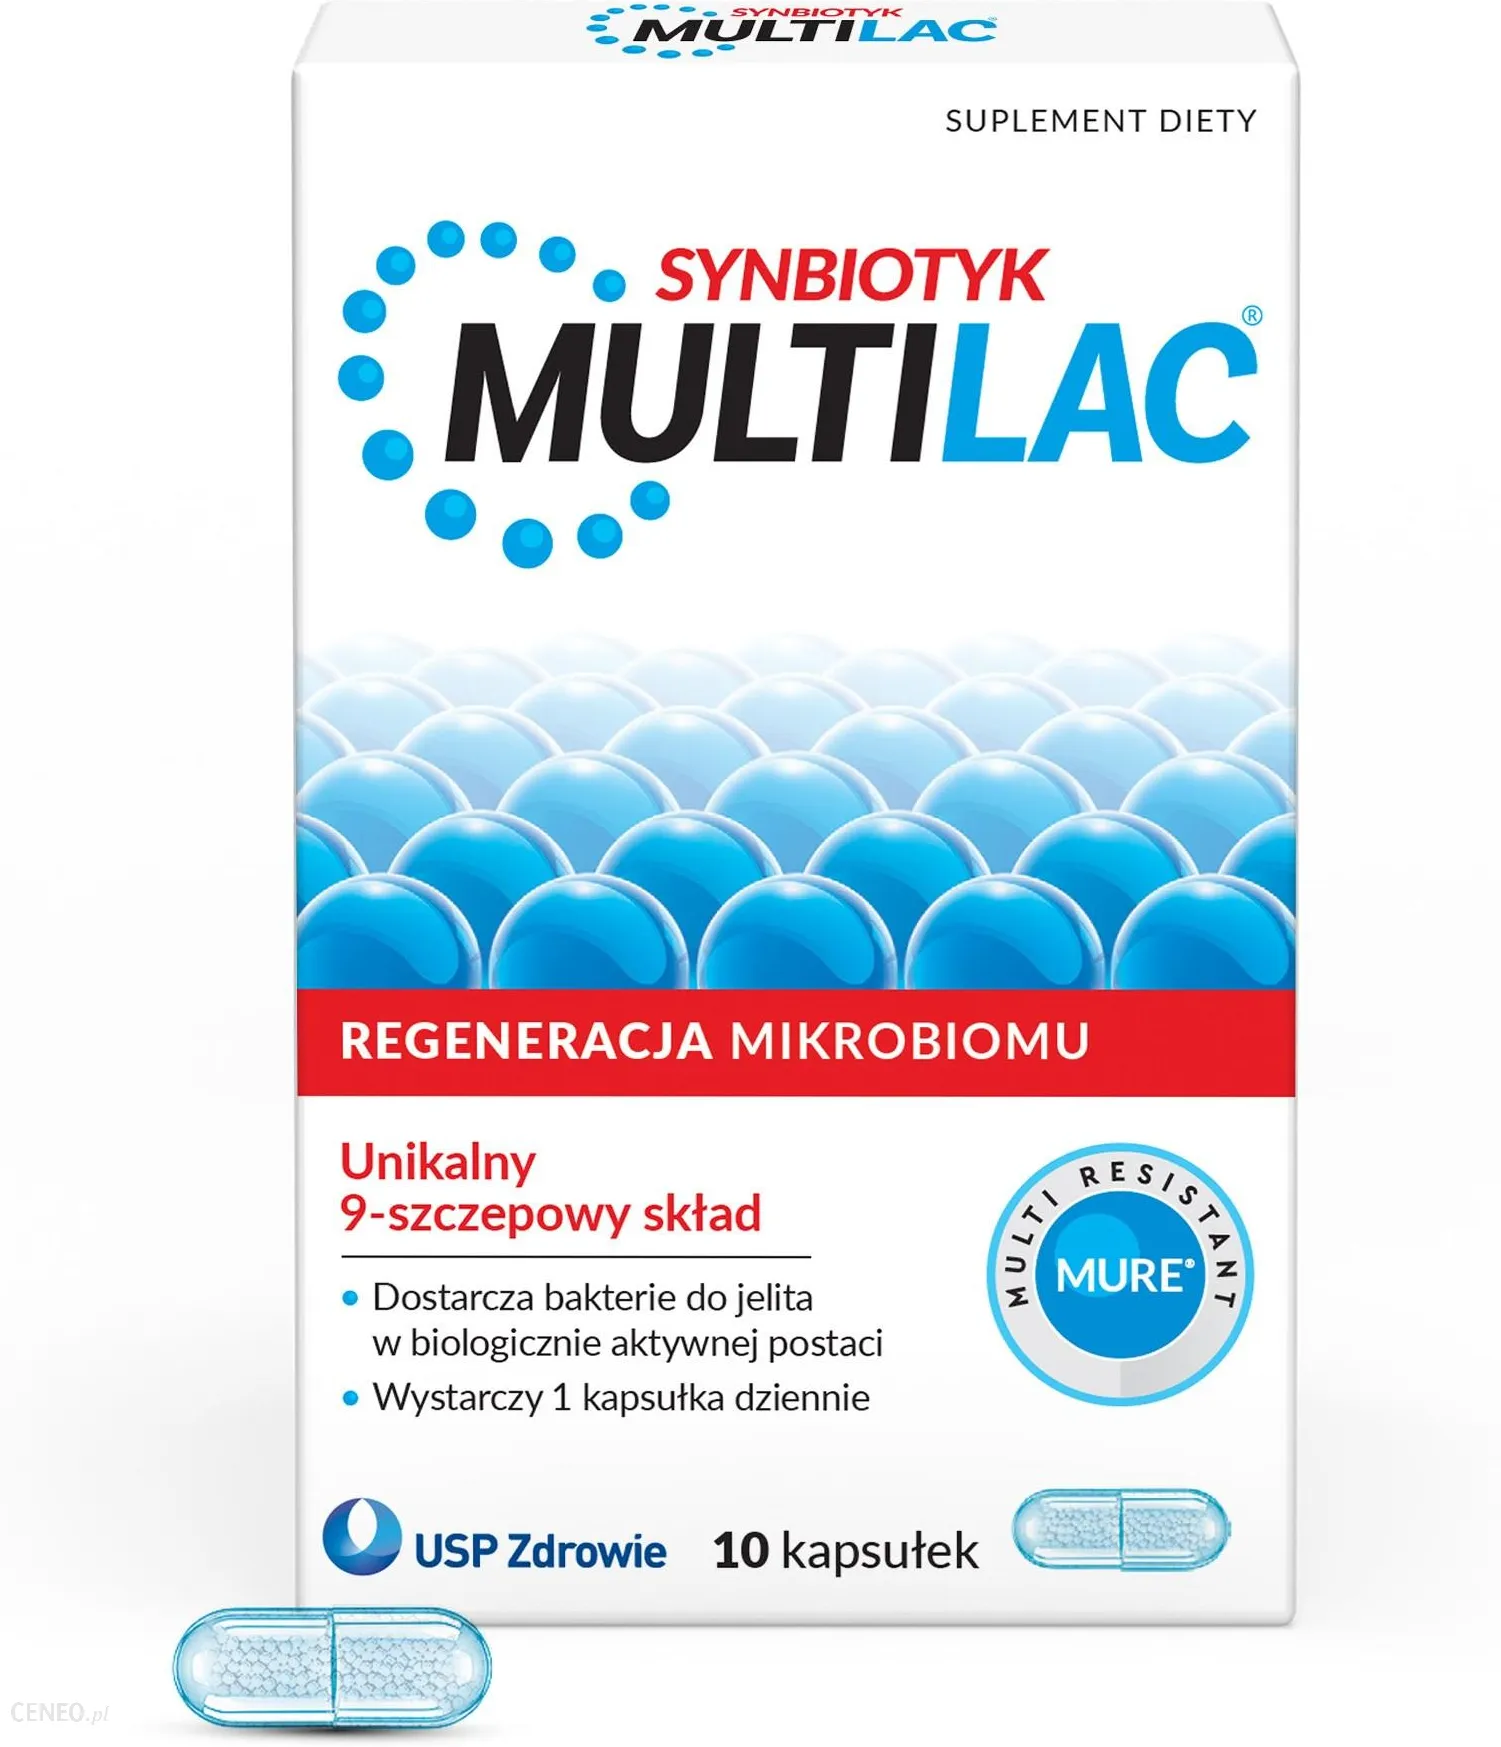 Multilac synbiotyk